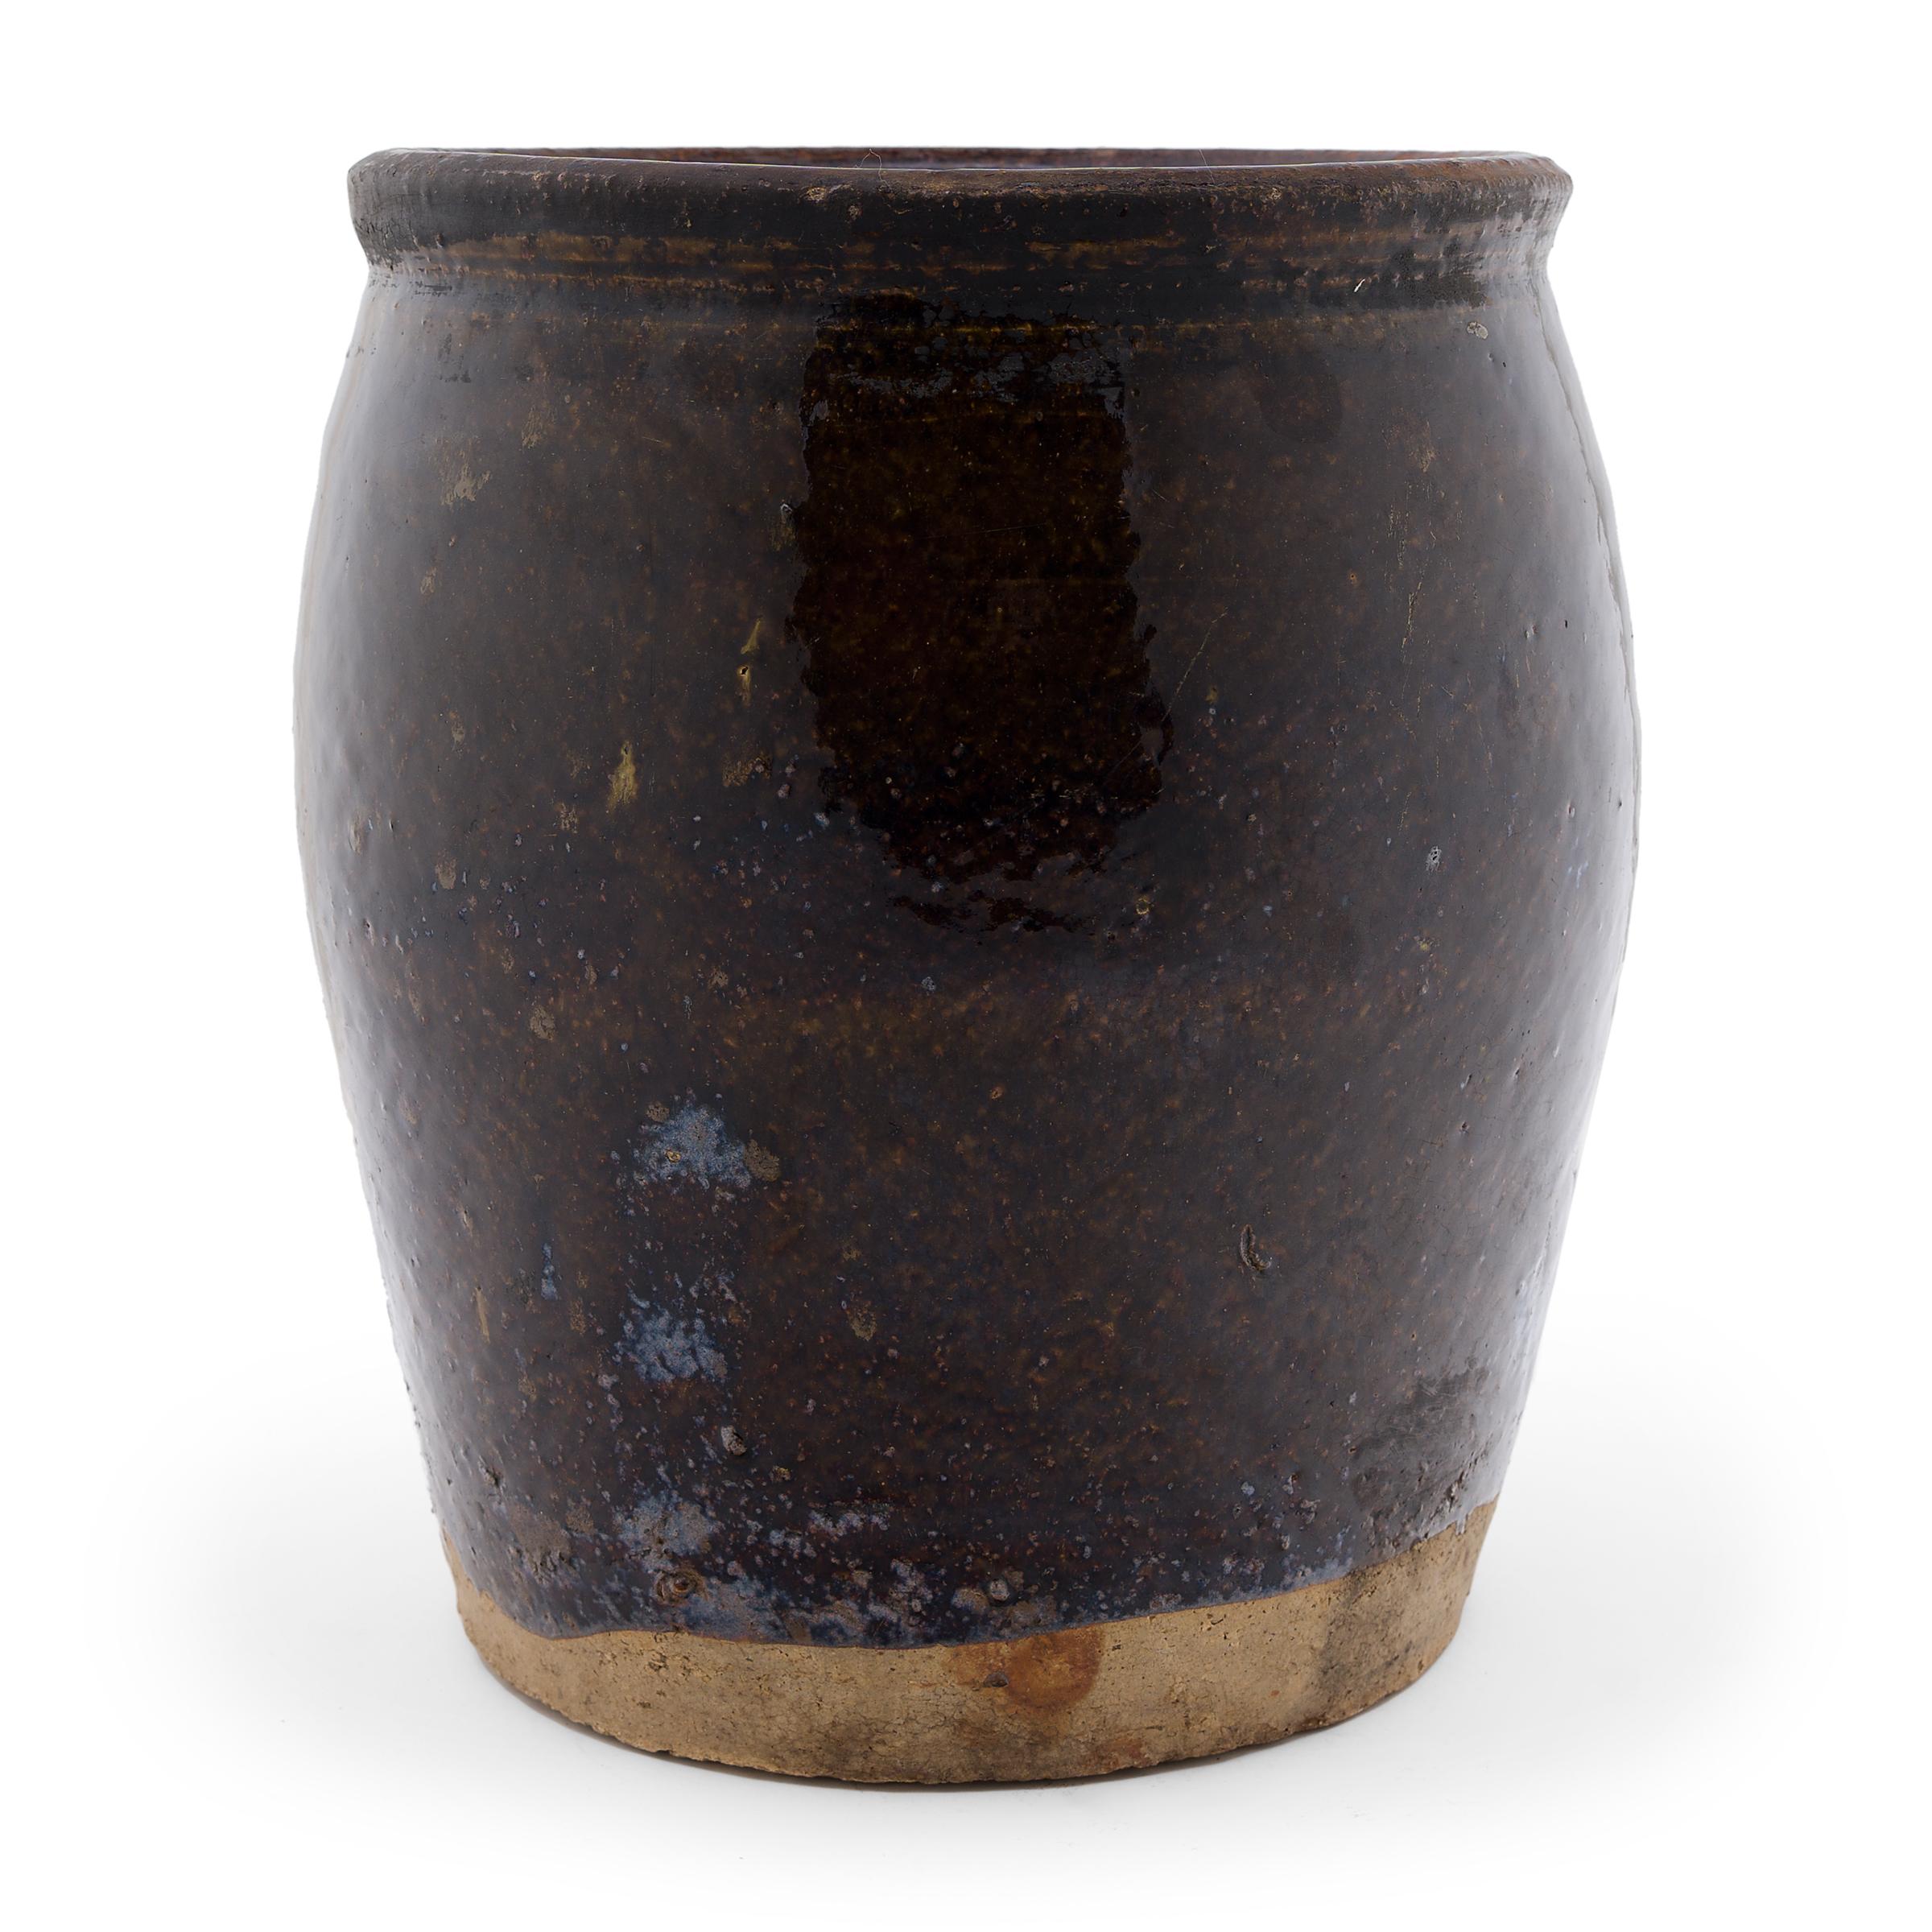 Dieses innen und außen mit einer reichen, dunkelbraunen Glasur überzogene Gefäß aus dem 19. Jahrhundert wurde ursprünglich zum Fermentieren von Lebensmitteln und Gewürzen in einer chinesischen Provinzküche verwendet. Das weithalsige Gefäß hat eine